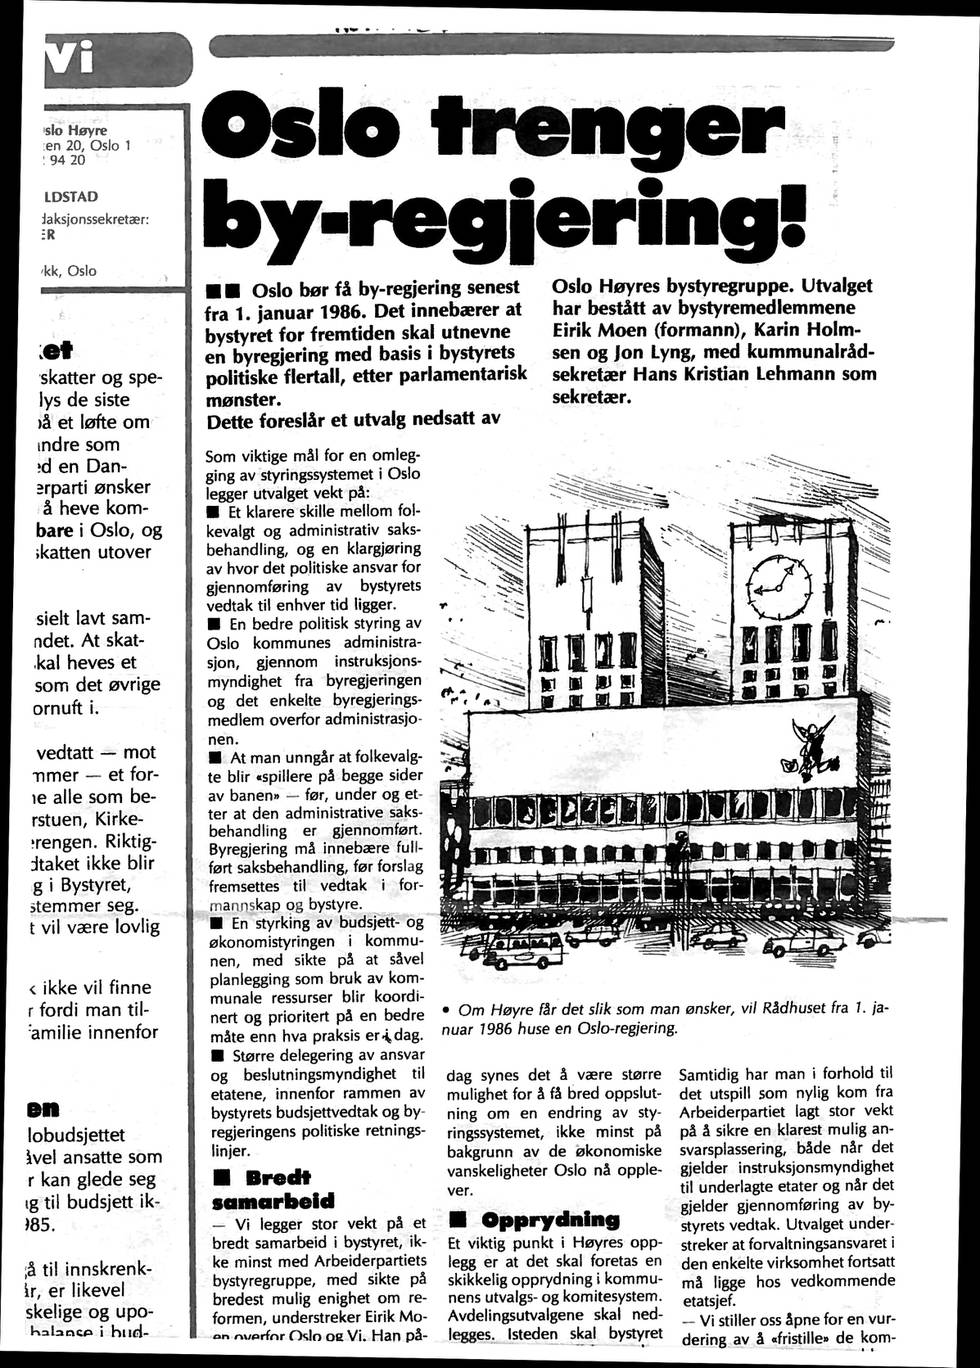 Høyres forslag: Første sak i Høyres medlemsblad «Oslo og vi» i november 1984 var at Høyre ville ha en byregjering.  FAKSIMILE: OSLO OG VI